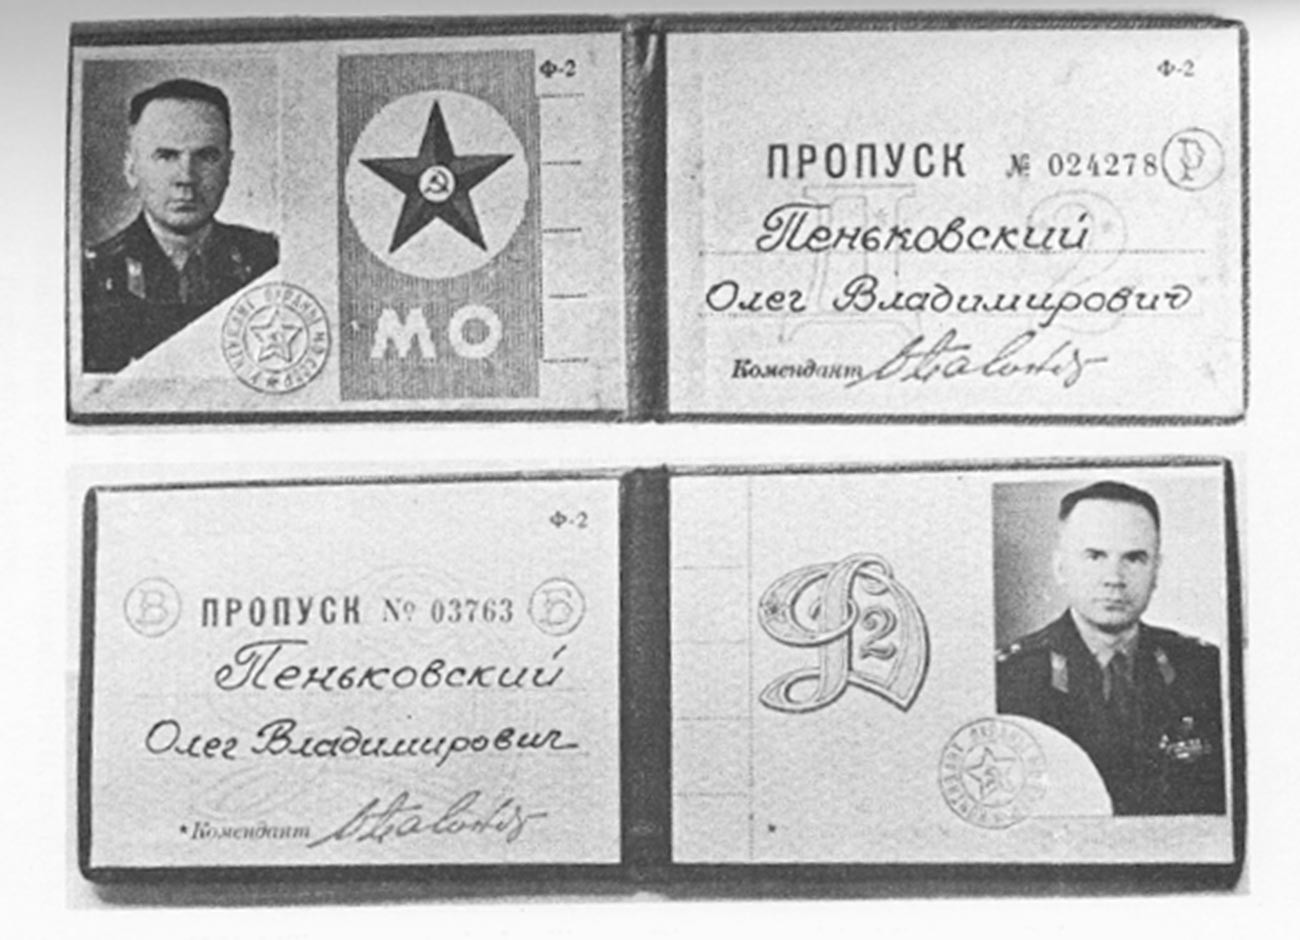 Laissez-passer de Penkovski pour l'état major et le ministère de la Défense d'URSS